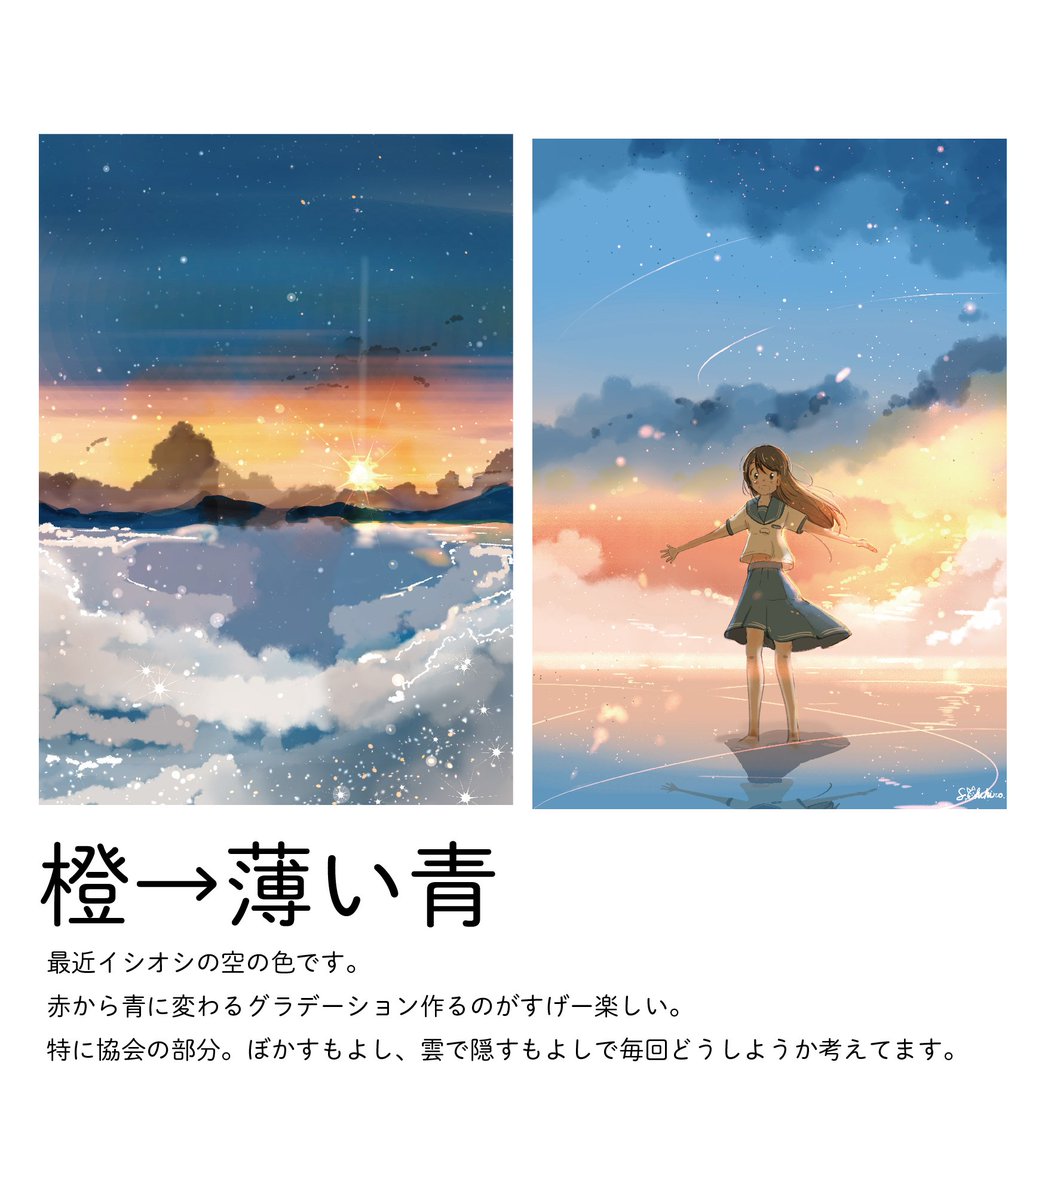 桜田千尋 満月珈琲店の星詠み2巻2月9日発売 Auf Twitter 自分の夕焼けのイラストを色ごとに分けてみました 夕焼けイラストは変化する空のグラデーション作るのが楽しいです 好きな空の色 ありますか 今後のグッズなどの参考にします